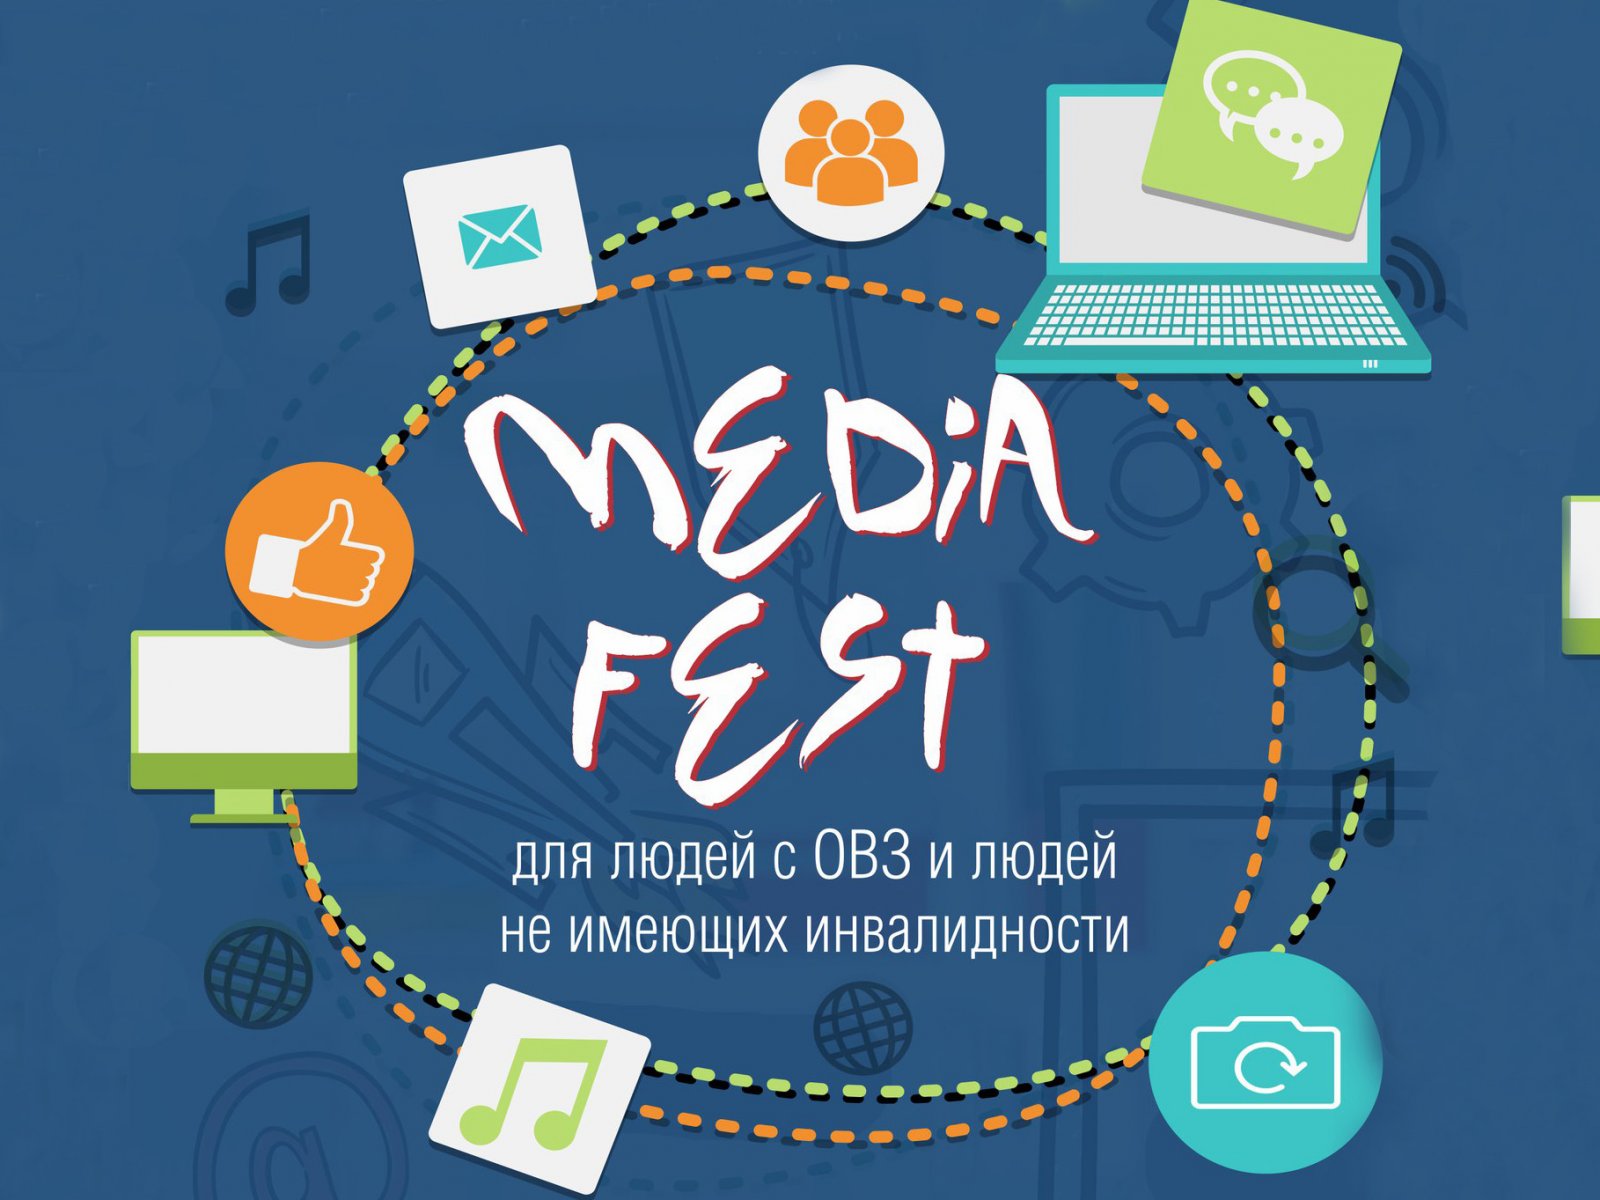 Приглашаем принять участие в инклюзивном проекте «Media Fest»